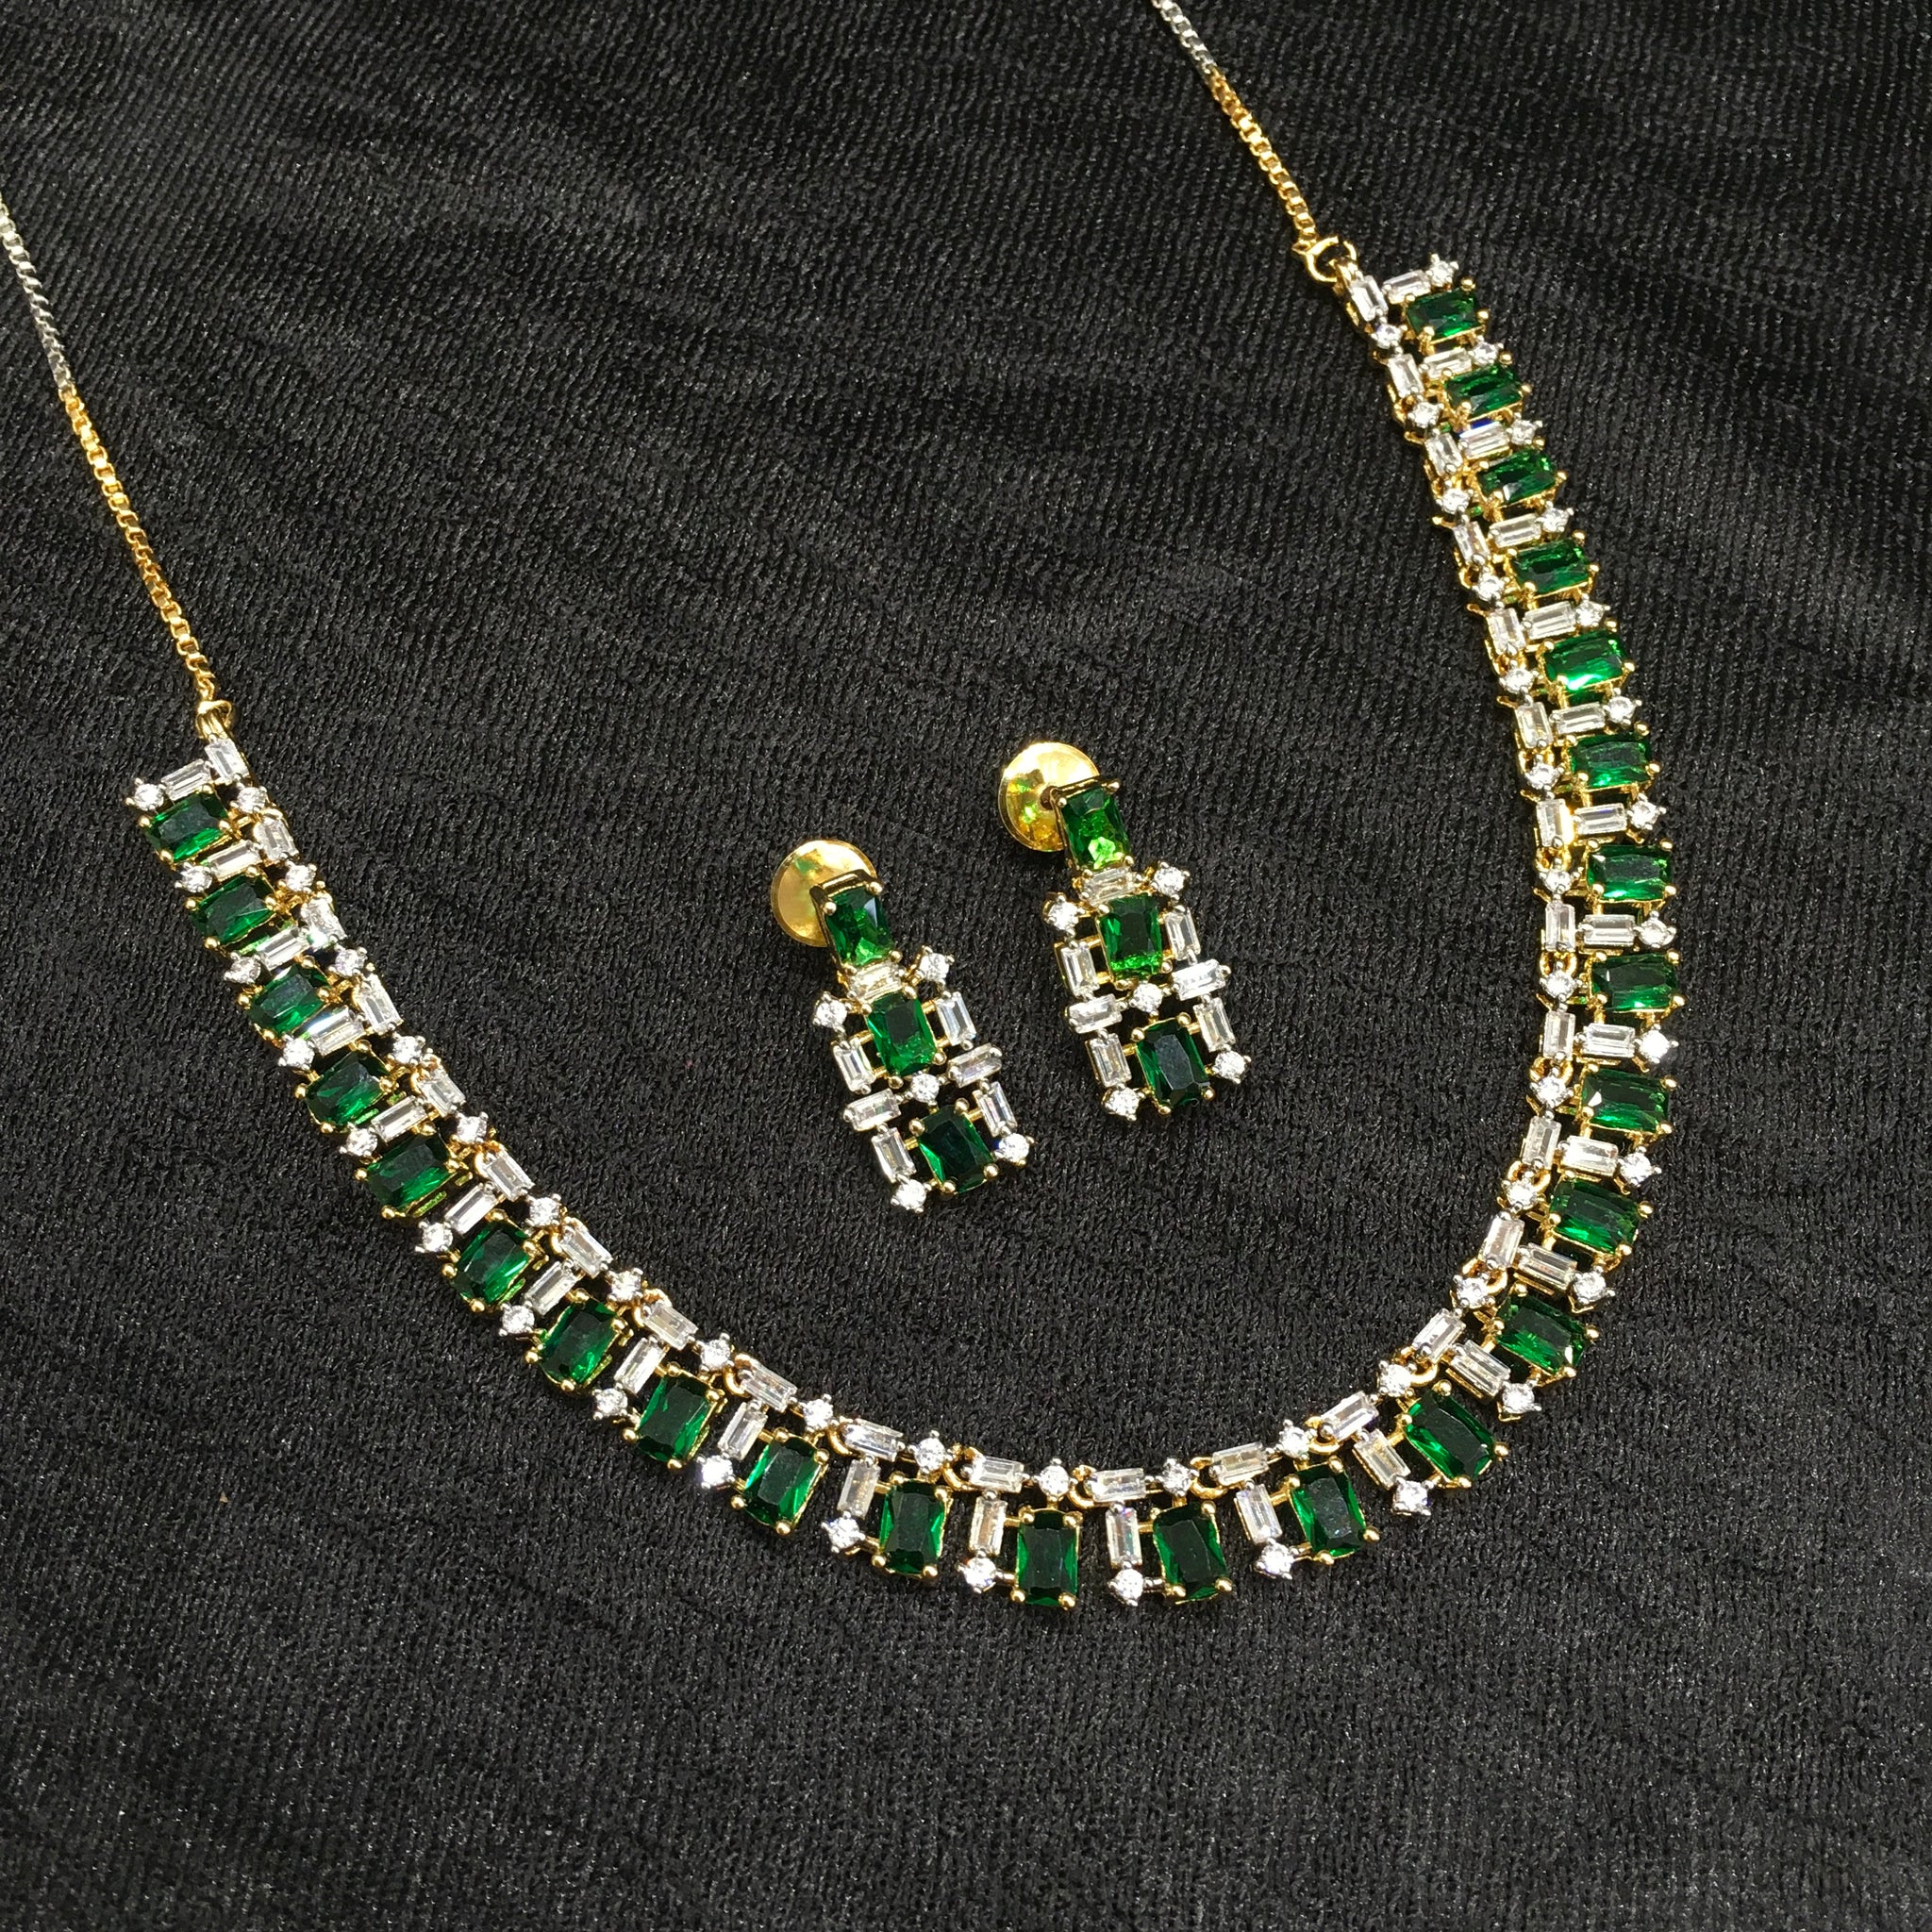 Round Neck Zircon/AD Necklace Set 6194-08 - Dazzles Jewellery